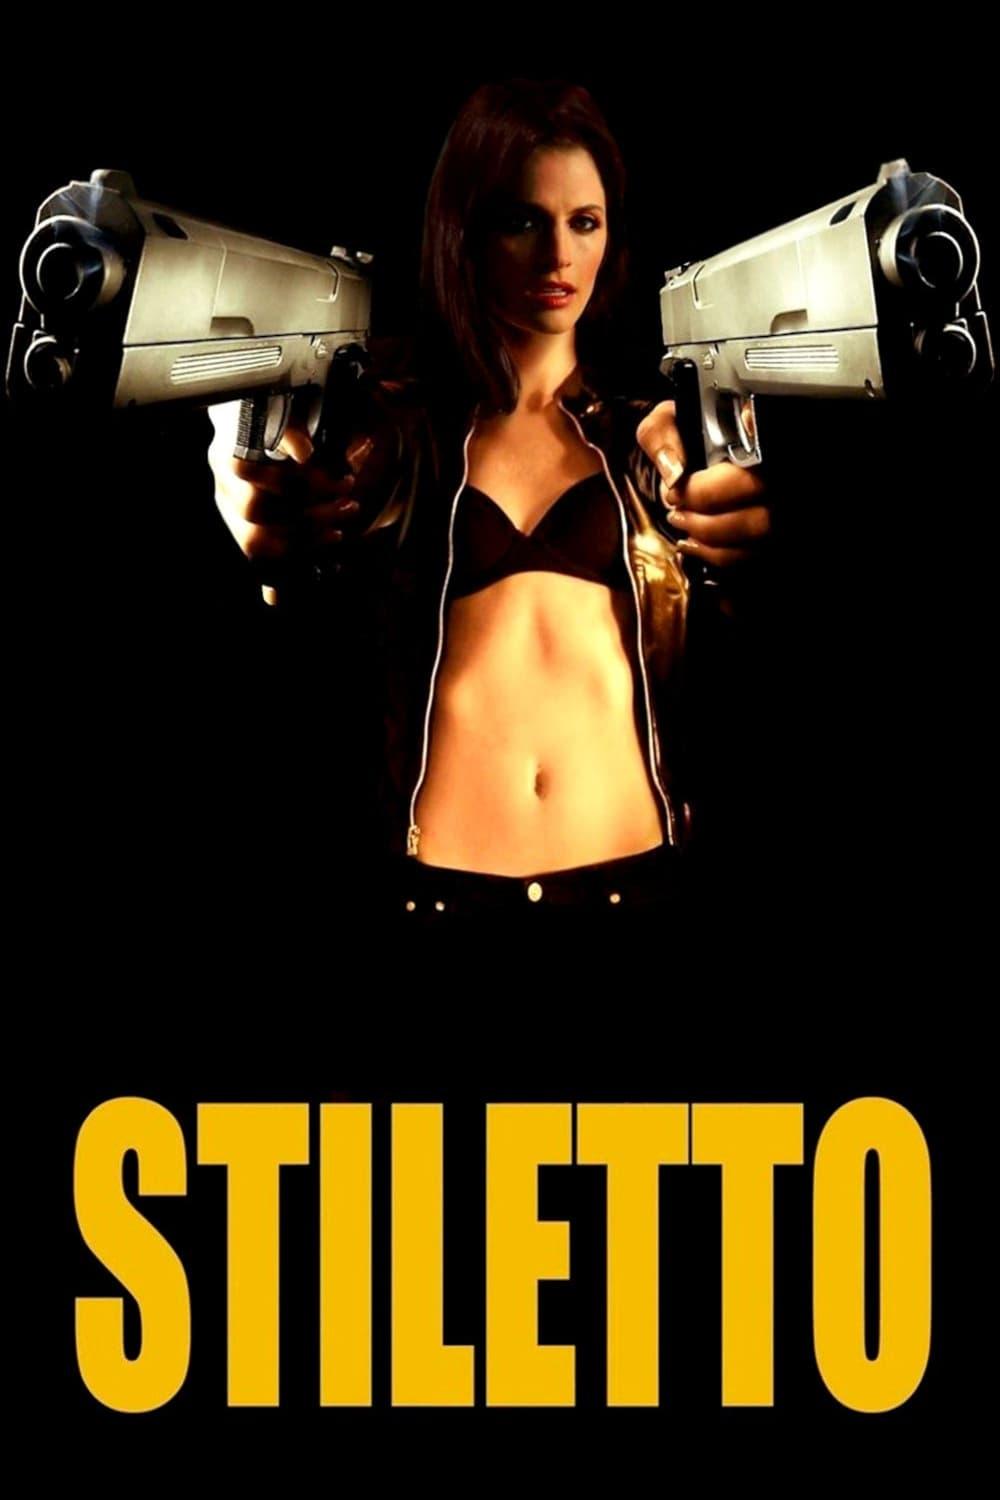 Stiletto poster